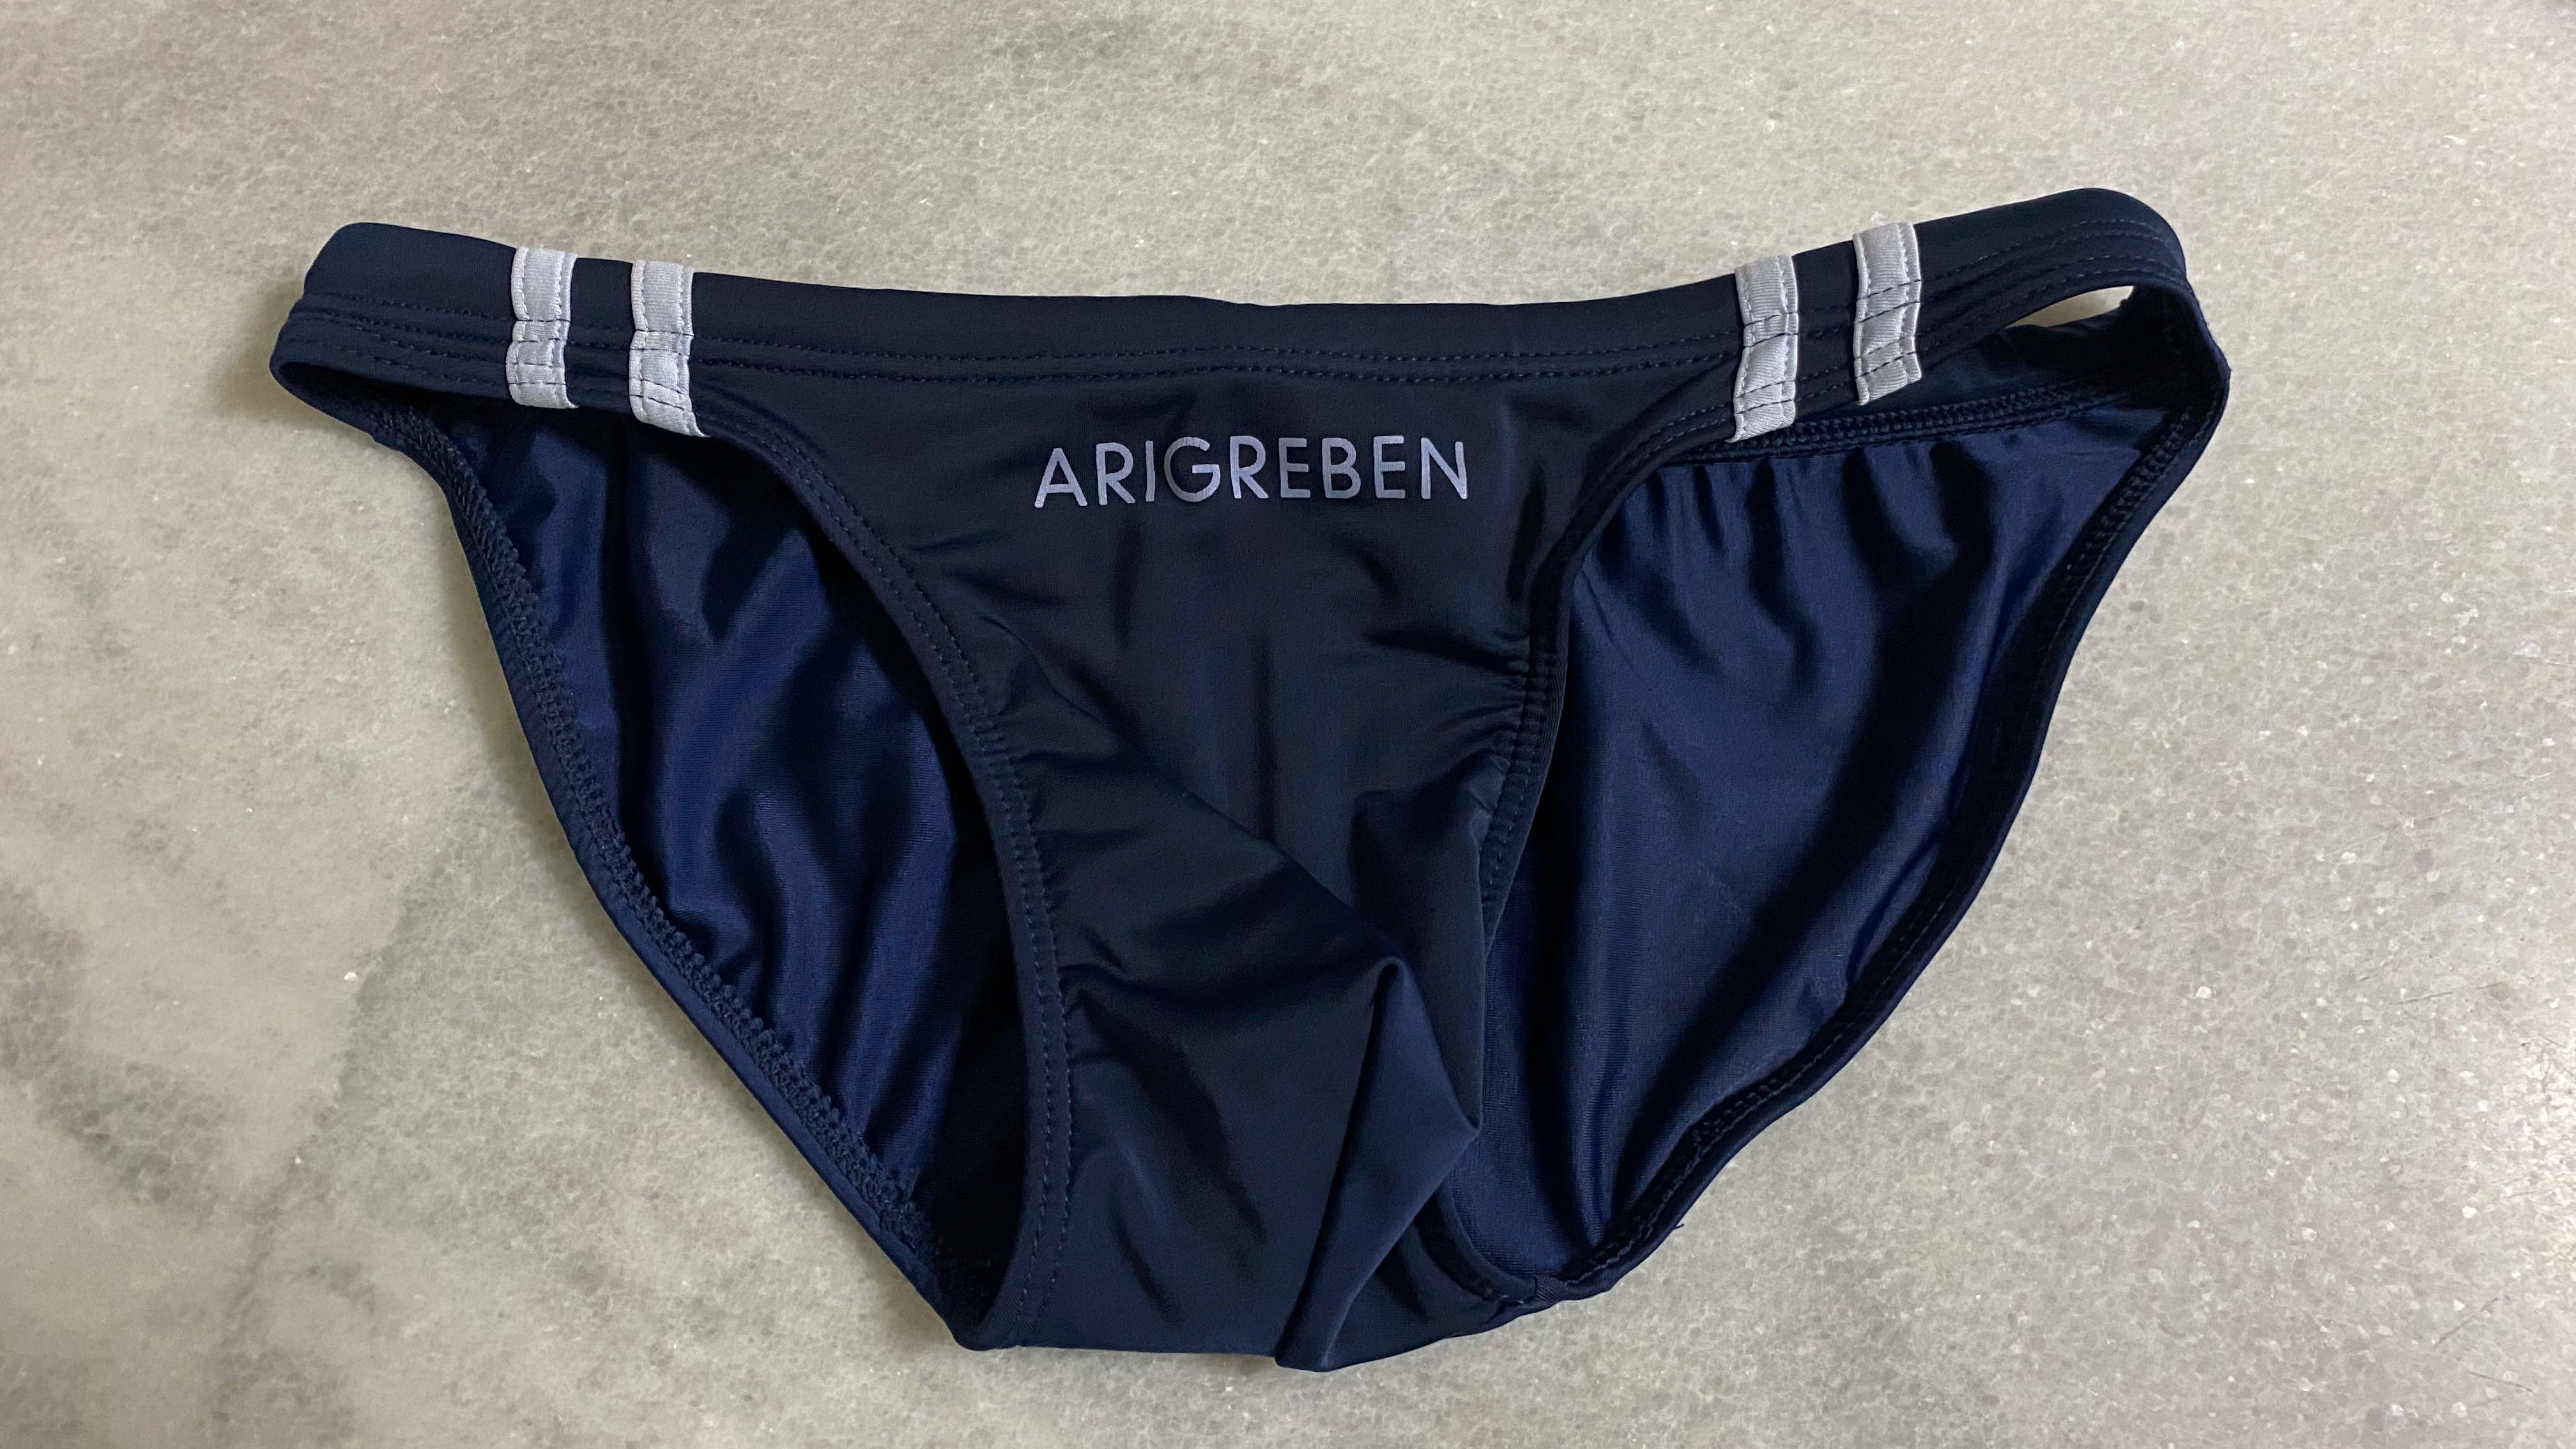 Arigreben Mens Swim Bikini (Navy), Men's Fashion, Bottoms, New ...